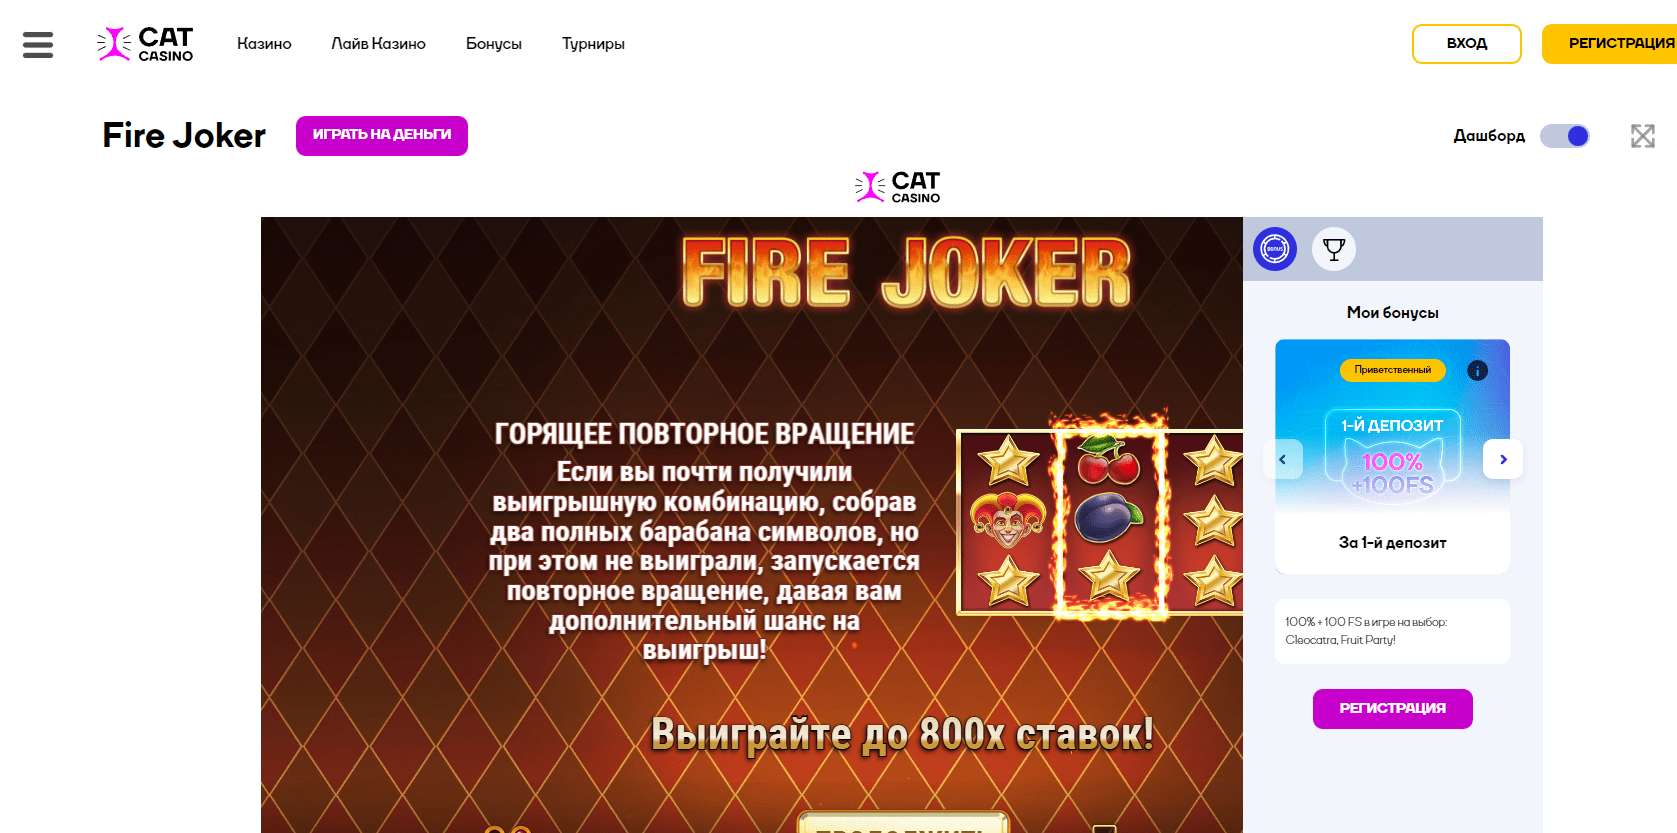 Fire joker online w Cat casino